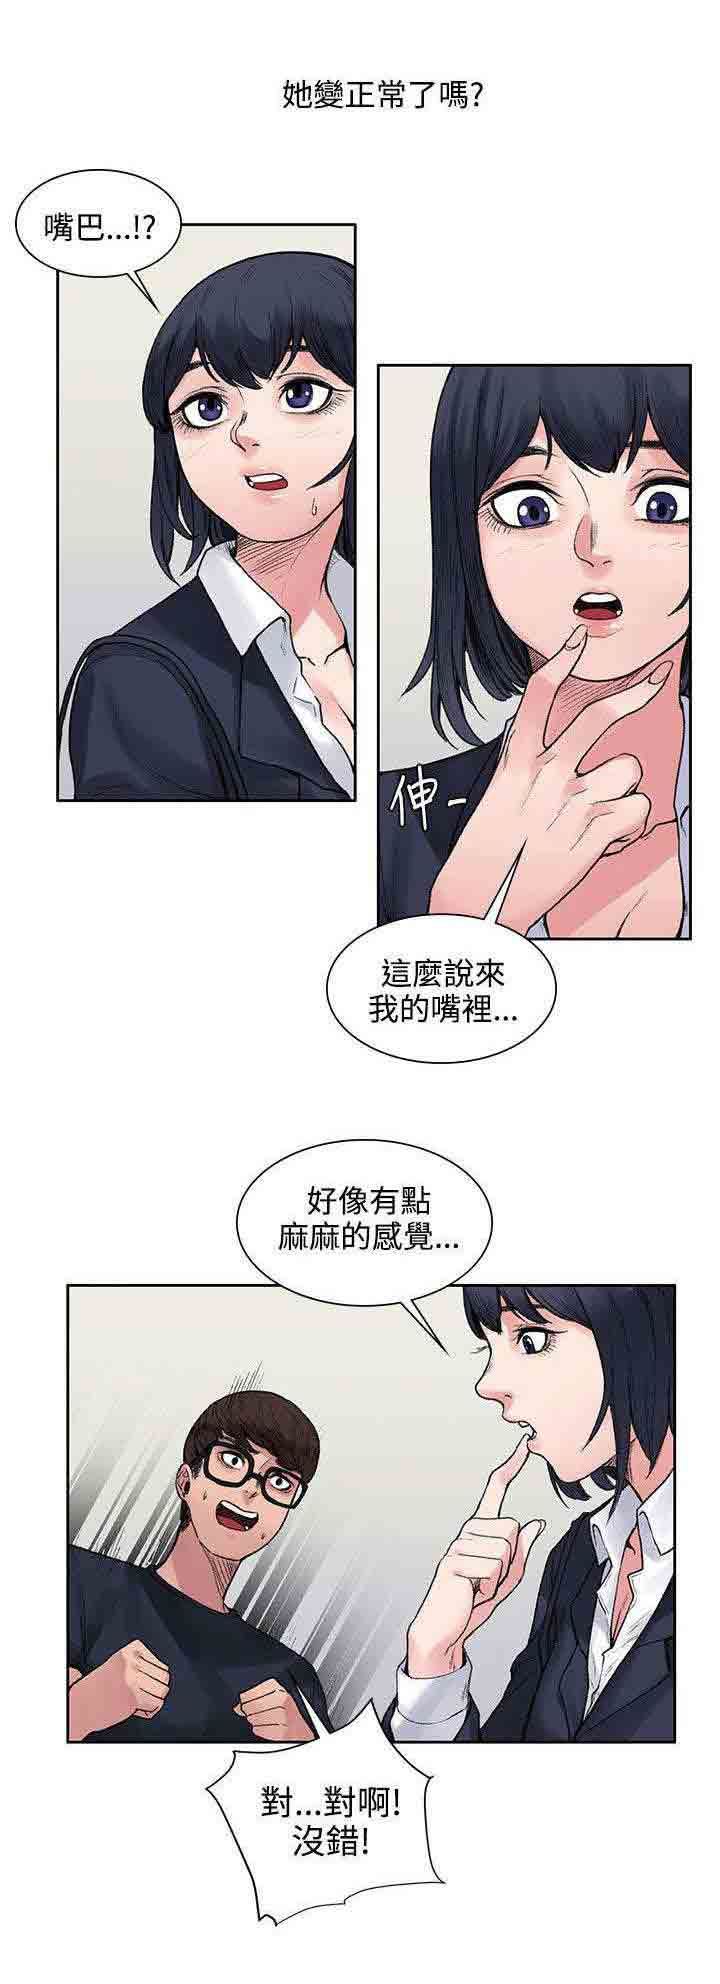 韩国污漫画 甜蜜的香氣 第17话算账 2